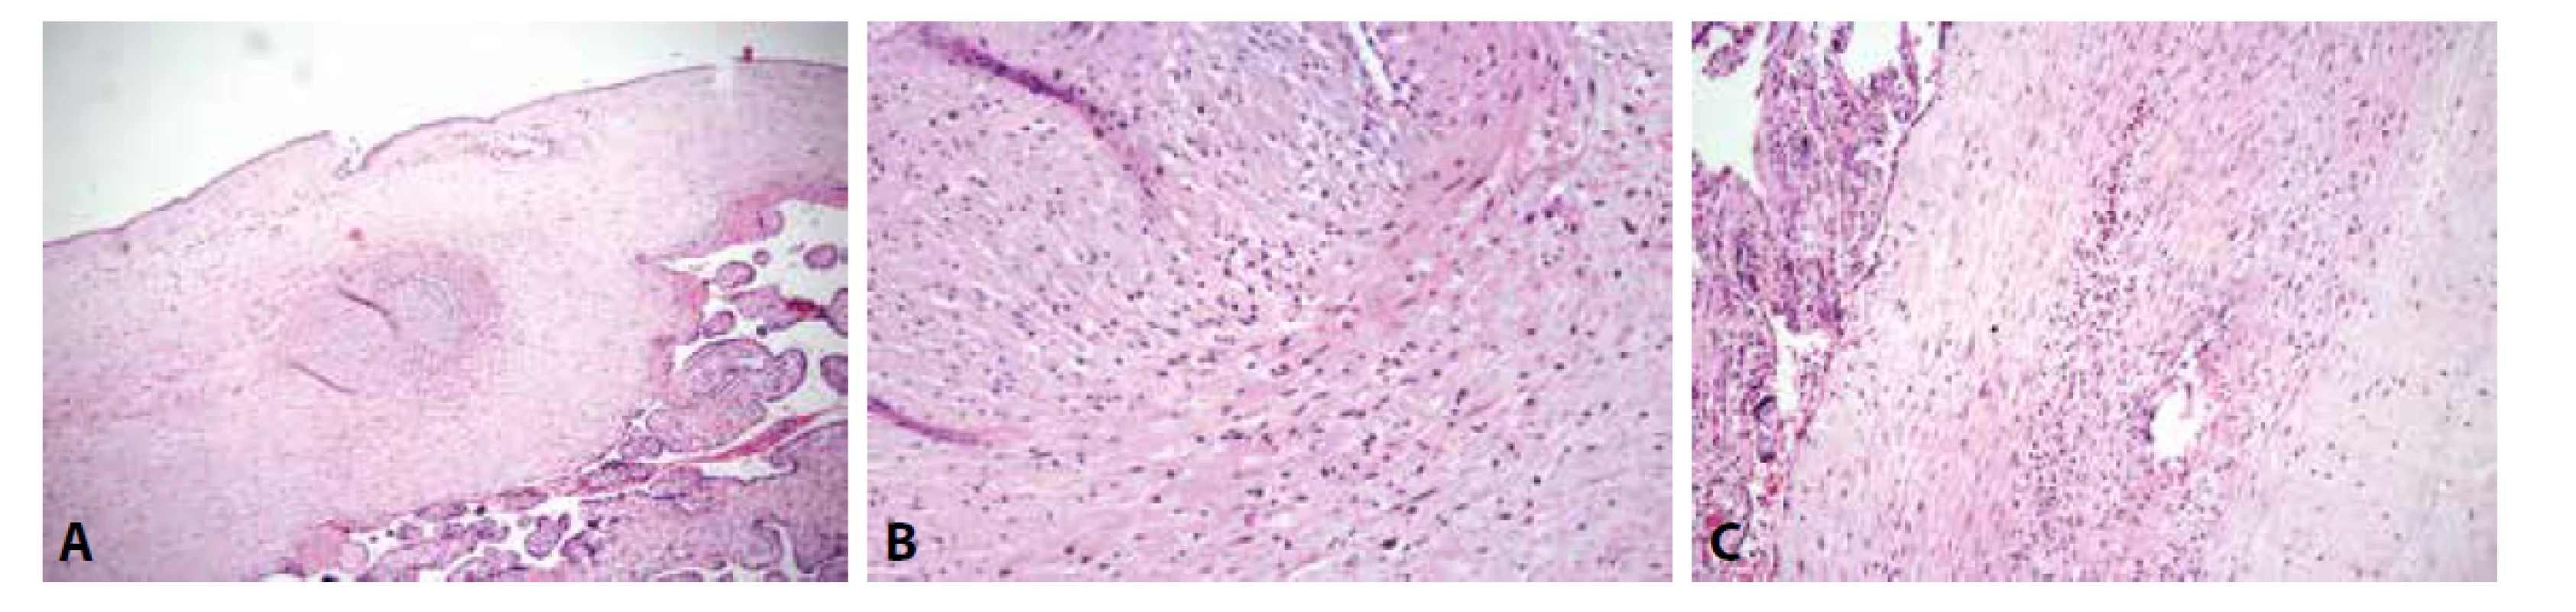 ETCV. A: Zánětlivá celulizace ve stěně cévy choriové plotny s organizovanou nástěnnou trombózou (HE, 100x). B: Zánětlivá celulizace tvořená lymfocyty
a ojedinělými eosinofilními granulocyty (HE, 200x). C: Výraznější příměs eosinofilních granulocytů v zánětlivém infiltrátu patrná po prokrájení parafinového
bloku (HE, 200x).